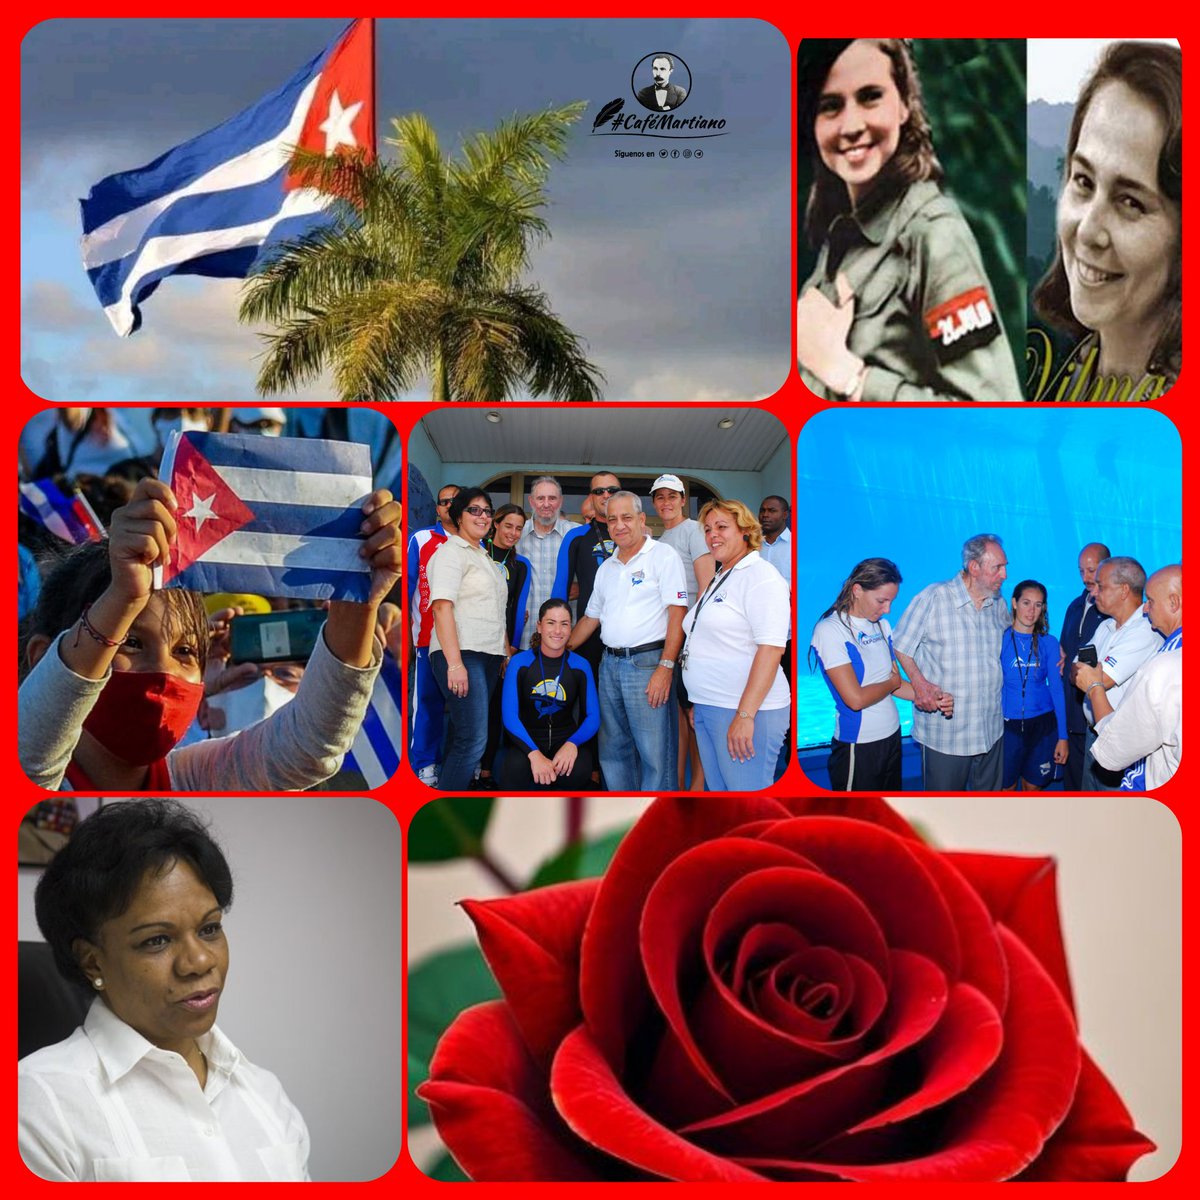 @cafemartiano @DiazCanelB @DrRobertoMOjeda @InesMChapman @TeresaBoue @EVilluendasC @IzquierdaUnid15 @agnes_becerra @mimovilespatria @DeZurdaTeam_ @ValoresTeam1 Buenos días 🇨🇺 #CaféMatiano ”Esta mujer cubana, tan bella, tan heroica, tan abnegada, flor para amar, estrella para mirar, coraza para resistir.” José Martí La mujer cubana, una revolución dentro de una Revolución. #CubaEsAmor